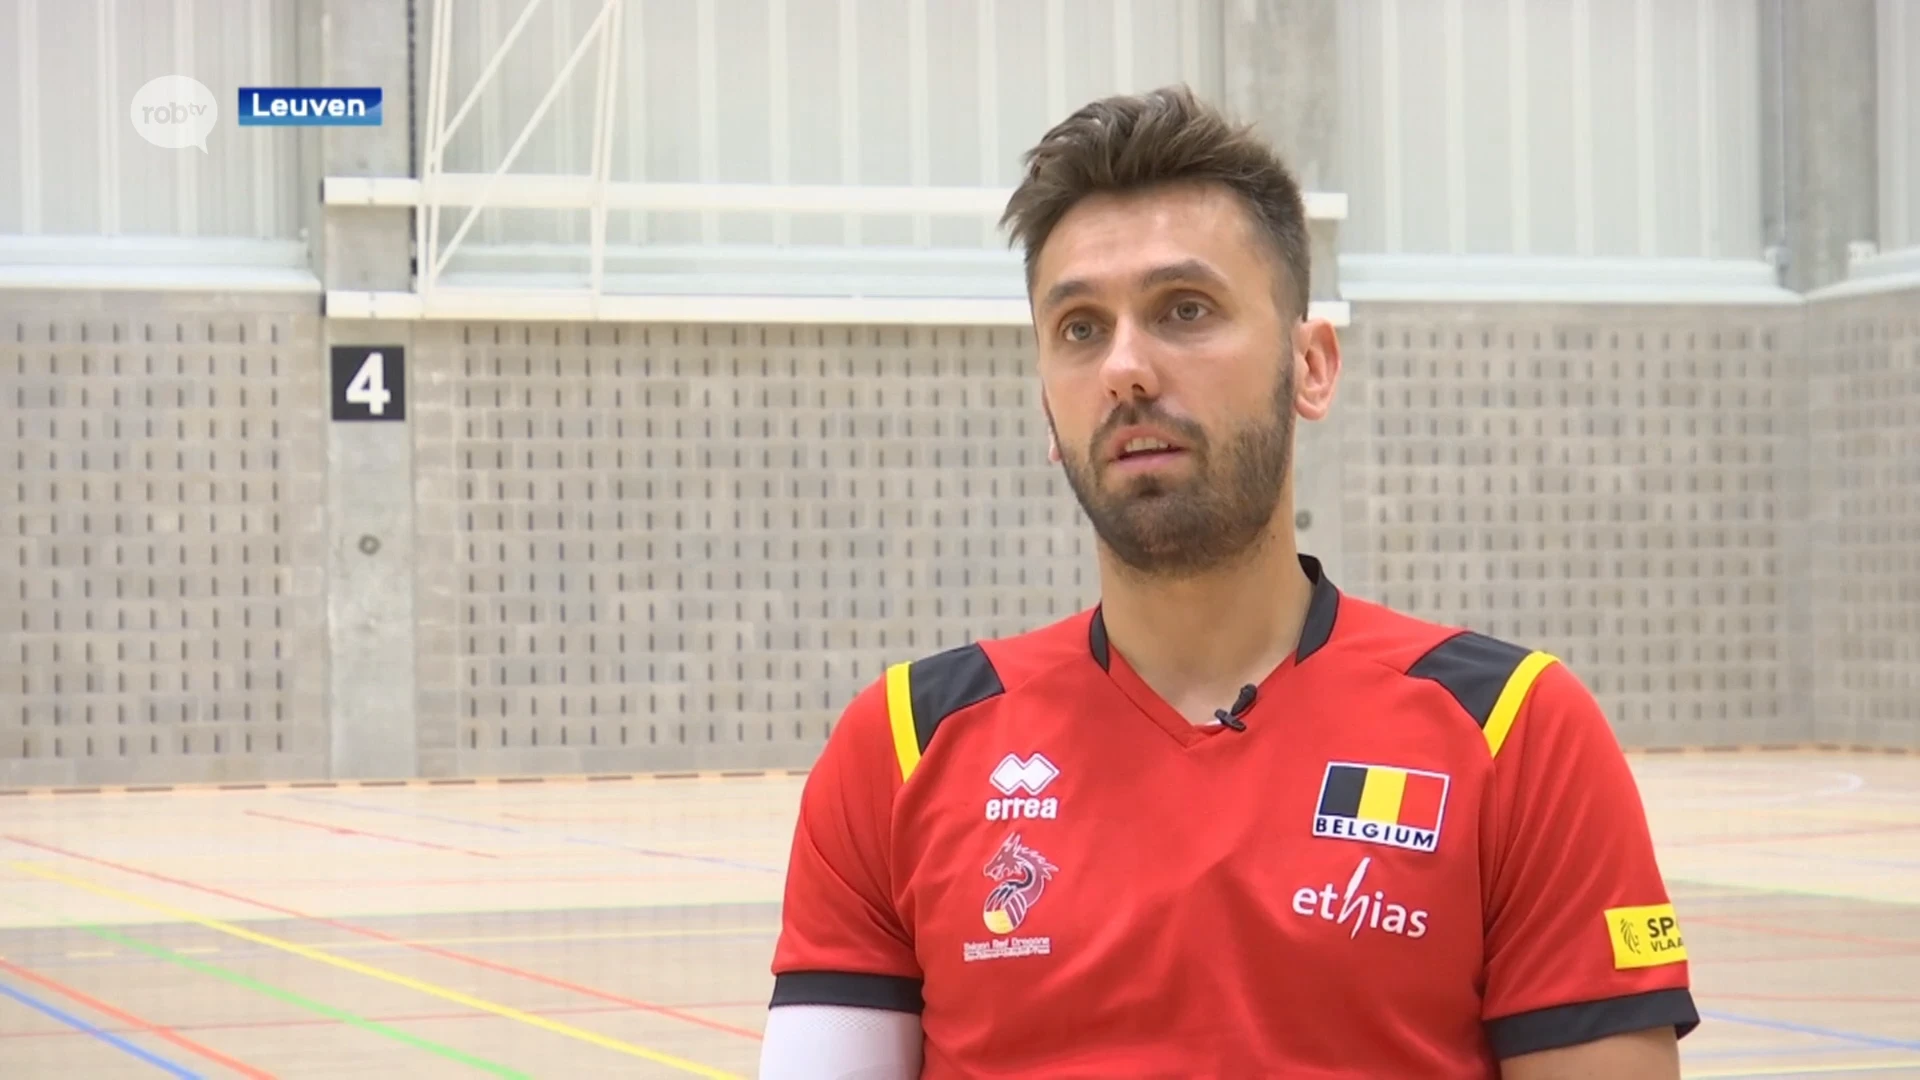 VHL levert 3 EK-gangers af, Hendrik Tuerlinckx noemt het een cruciaal tornooi: "In het belang van Belgische volleybal"